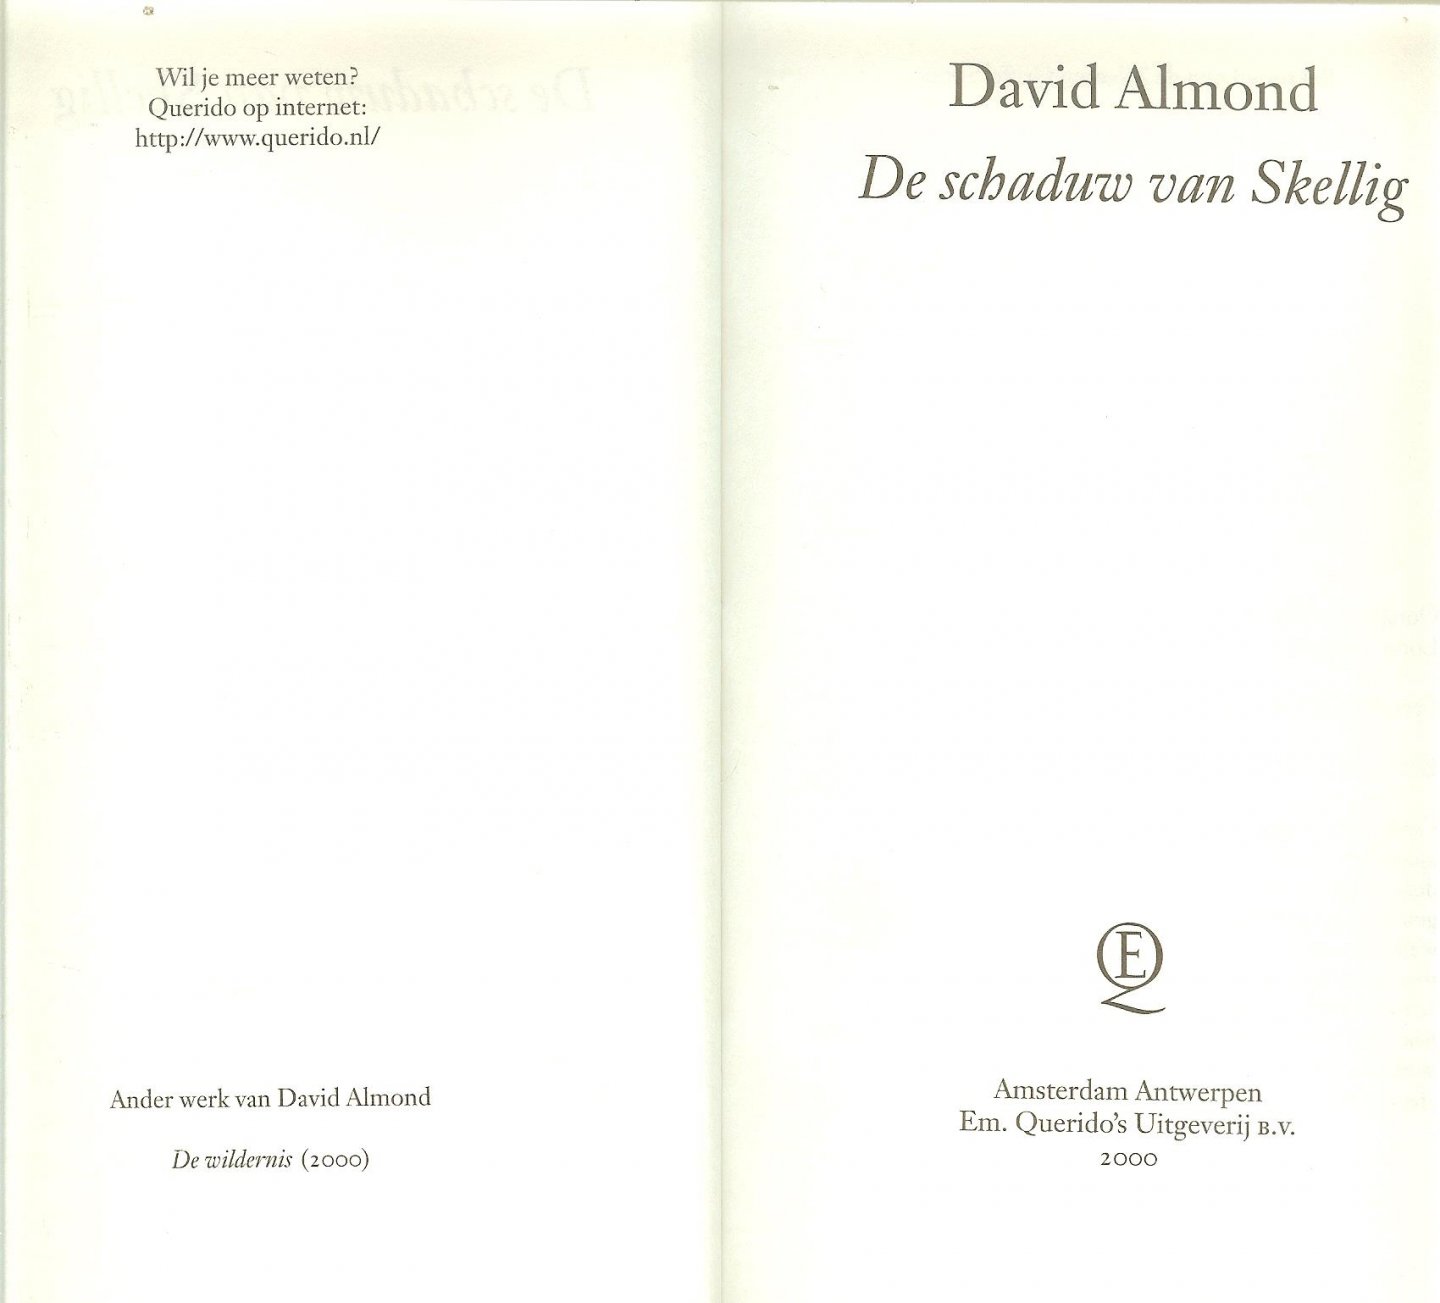 Almond, David . Vertaling  Annelies Jorna  Bekroond met de Zilveren Griffel 2000 - De schaduw van Skellig